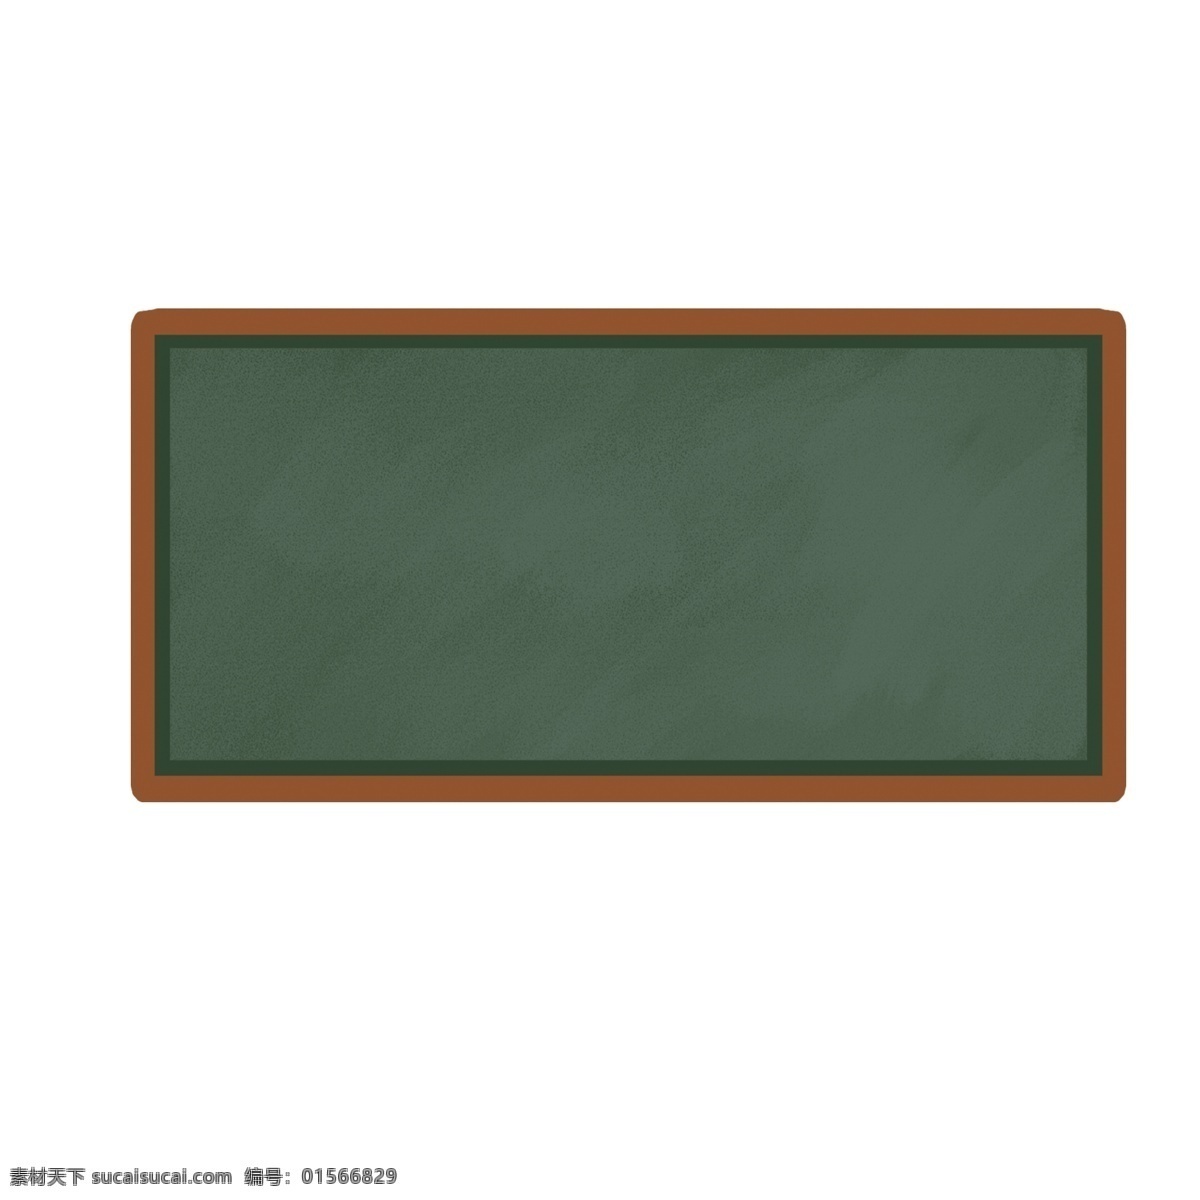 卡通 黑板 装饰 元素 黑板元素 黑板素材 卡通黑板 绿色黑板 绿色 绿色元素 绿色素材 手绘黑板 手绘元素 手绘素材 元素设计 动漫动画